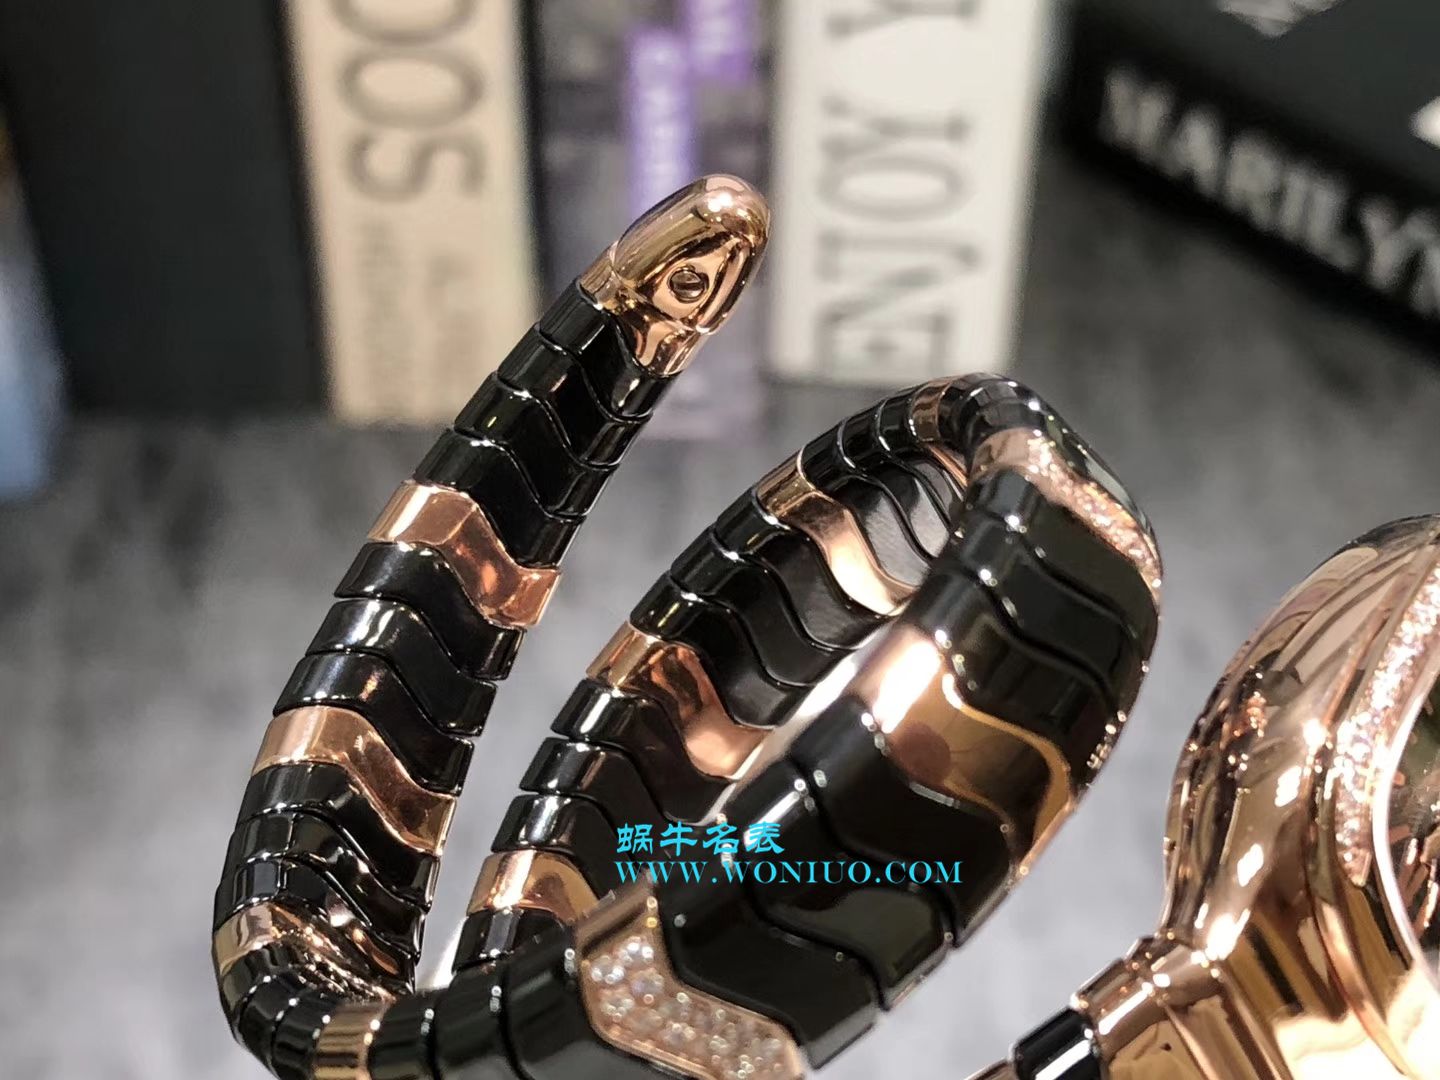 宝格丽Serpenti Spiga系列腕表集女性制表工艺之大成蛇形腕表 / BG005